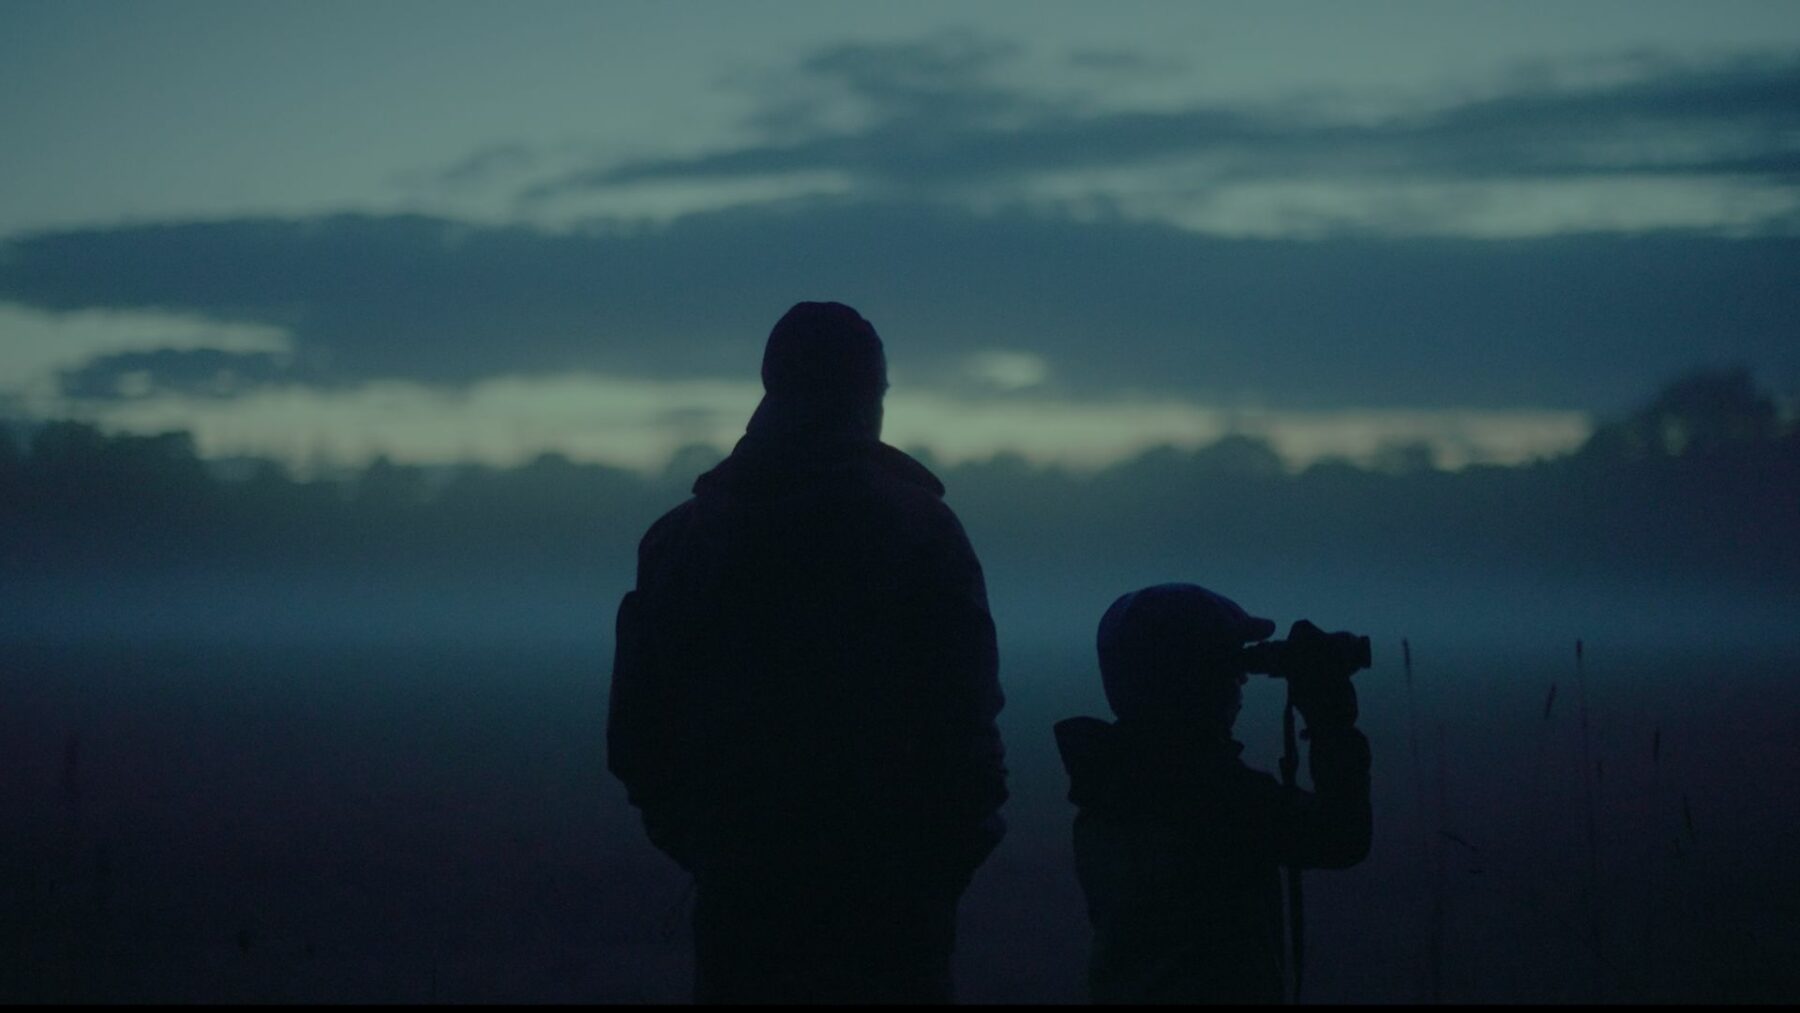 Sylwetka dorosłego mężczyzny i dziecka z lornetką na tle osnutego mgłą krajobrazu